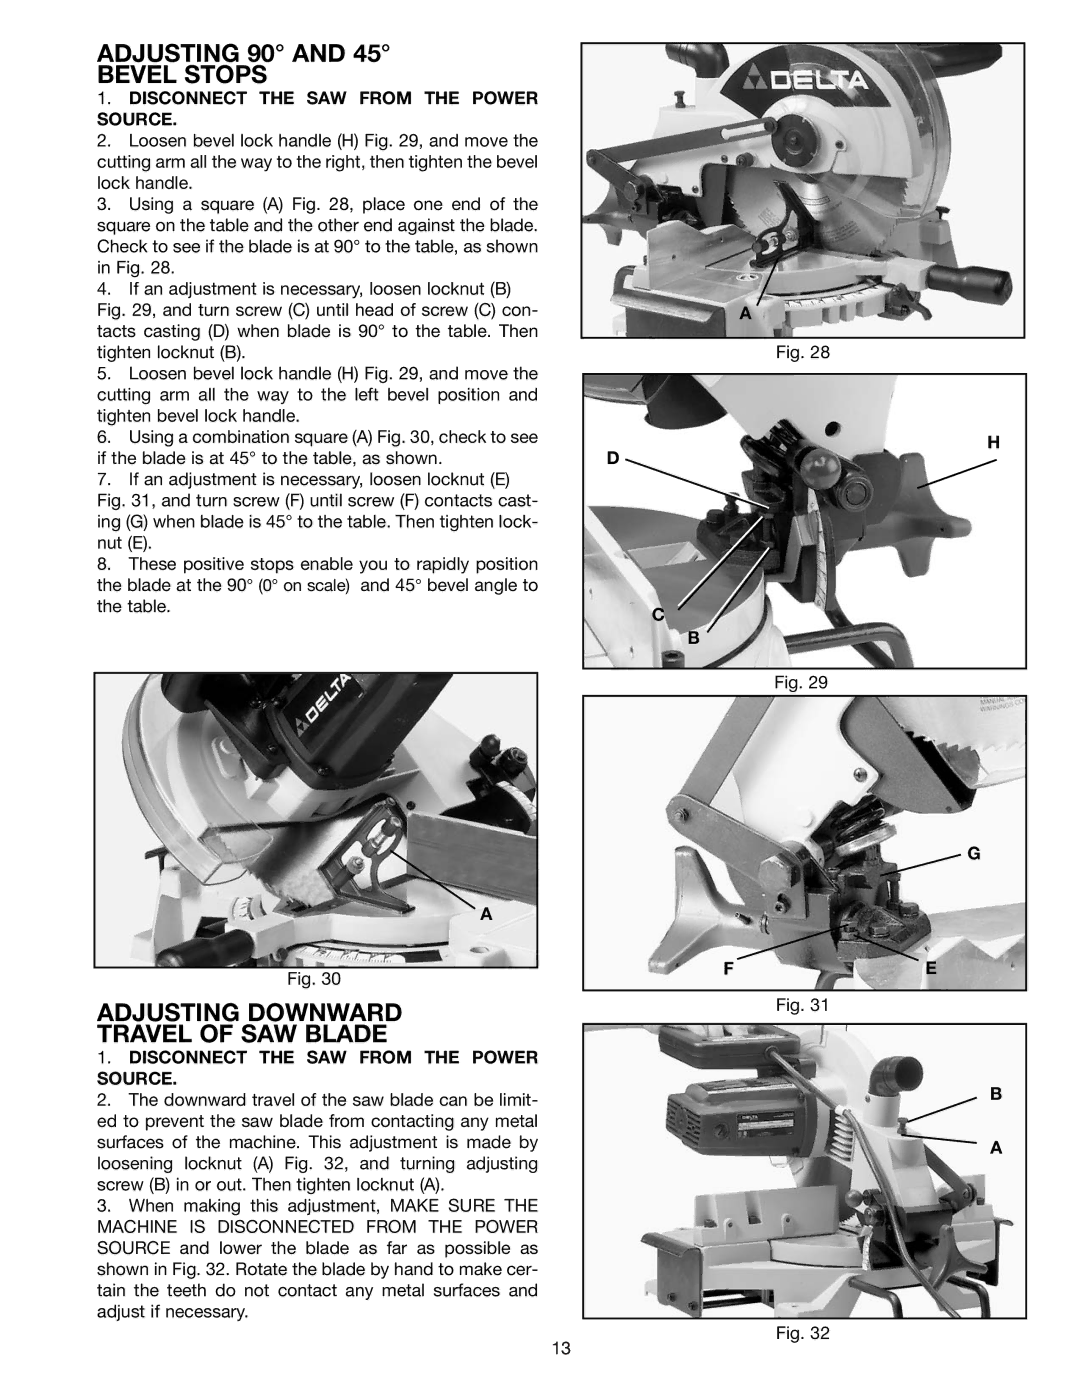 Porter-Cable 36-225 instruction manual Adjusting 90 Bevel Stops, Adjusting Downward Travel of SAW Blade 